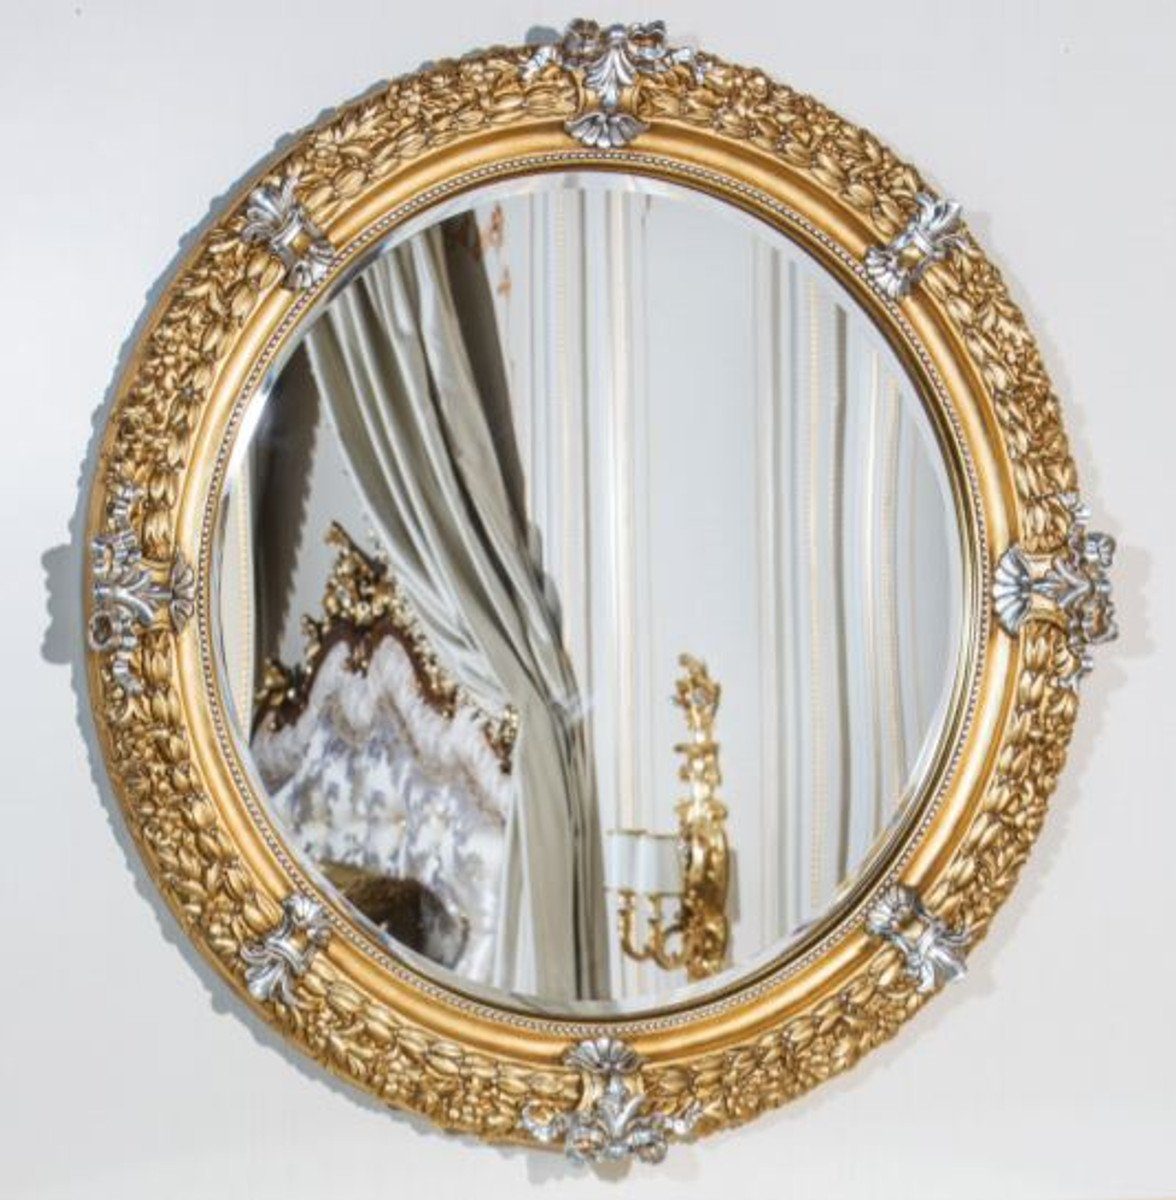 Casa Padrino Barockspiegel Luxus Barock Spiegel Gold / Silber Ø 103 cm - Prunkvoller handgeschnitzter Wandspiegel im Barockstil - Luxus Qualität - Made in Italy